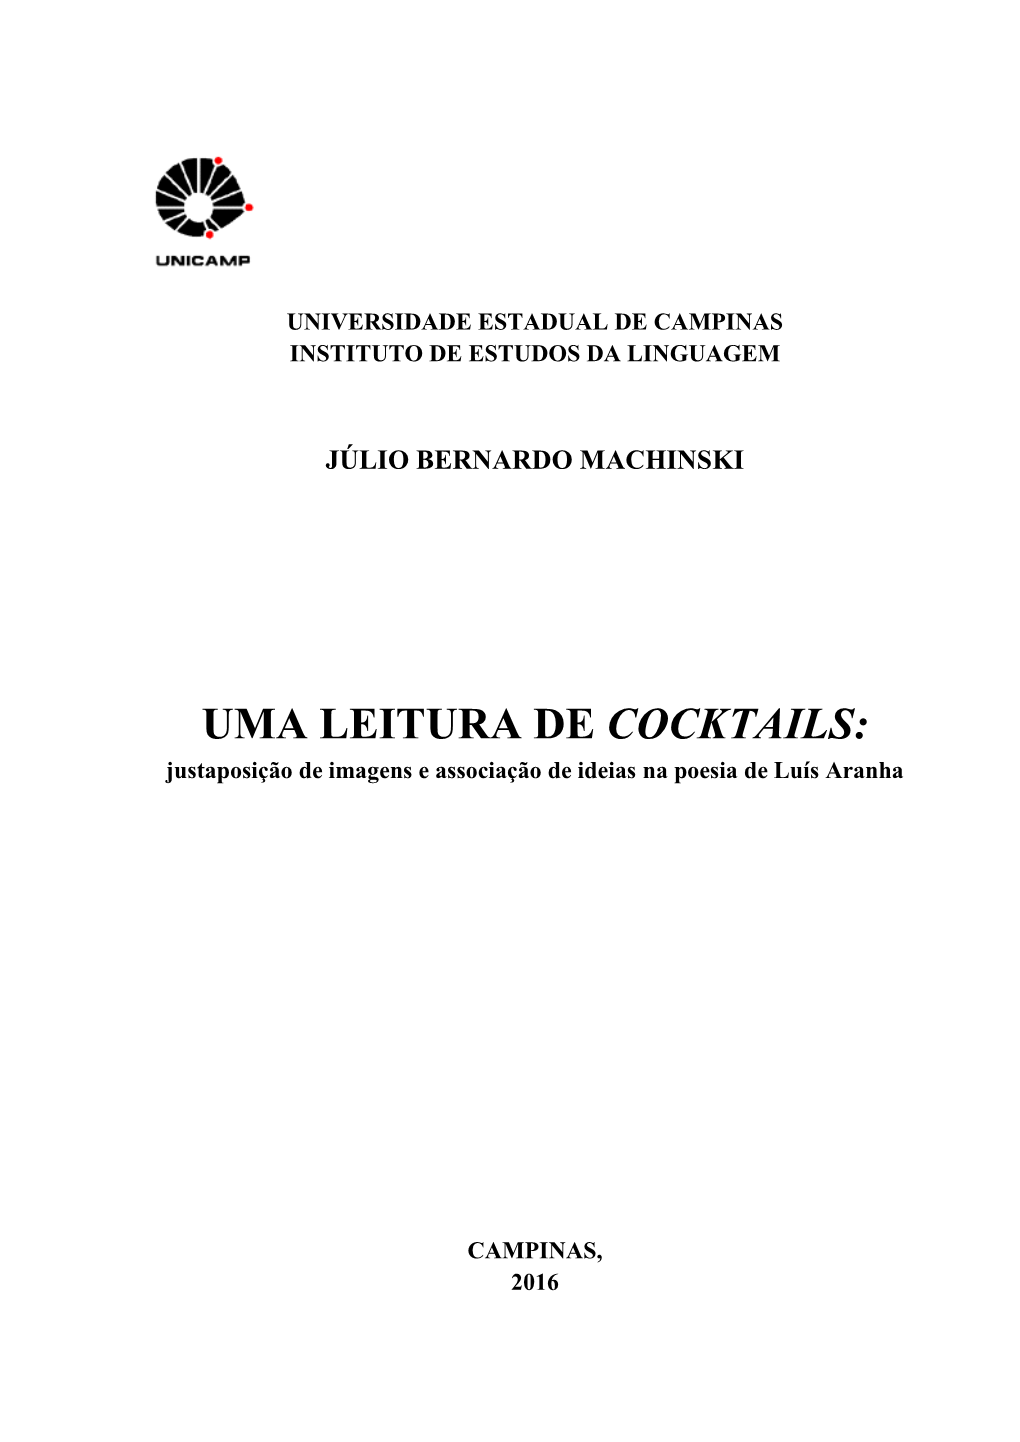 UMA LEITURA DE COCKTAILS: Justaposição De Imagens E Associação De Ideias Na Poesia De Luís Aranha